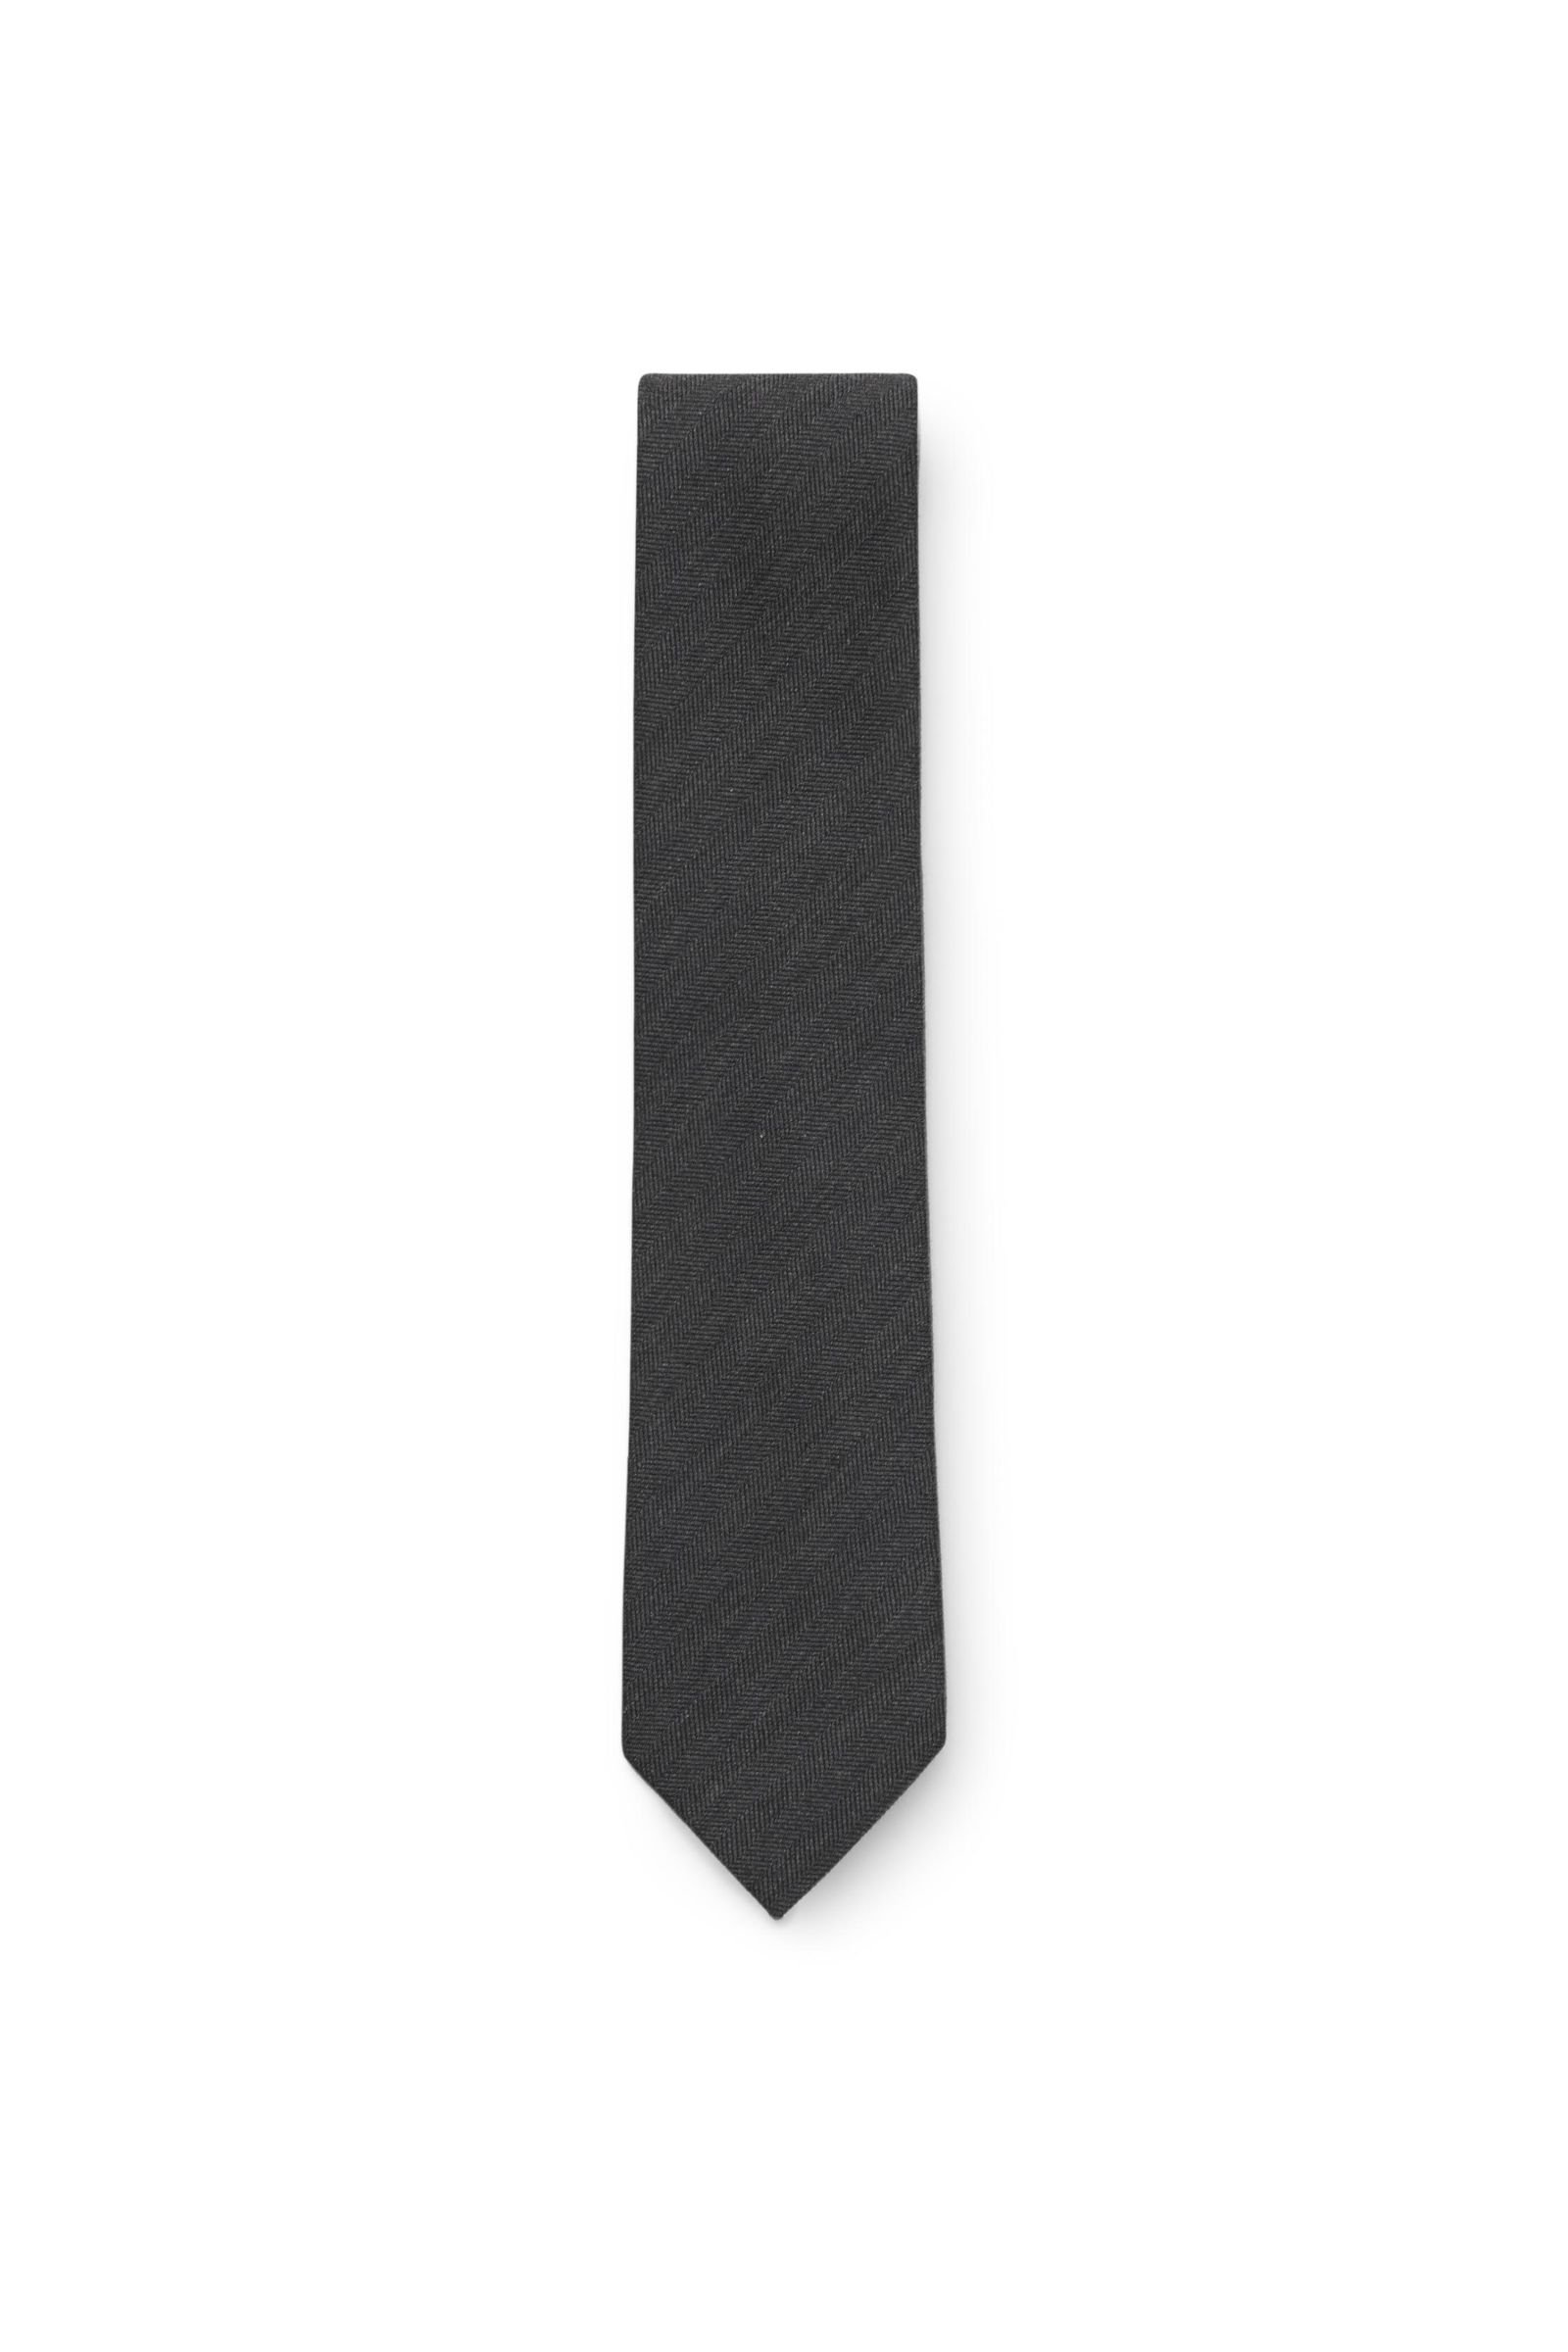 Tie dark grey patterned